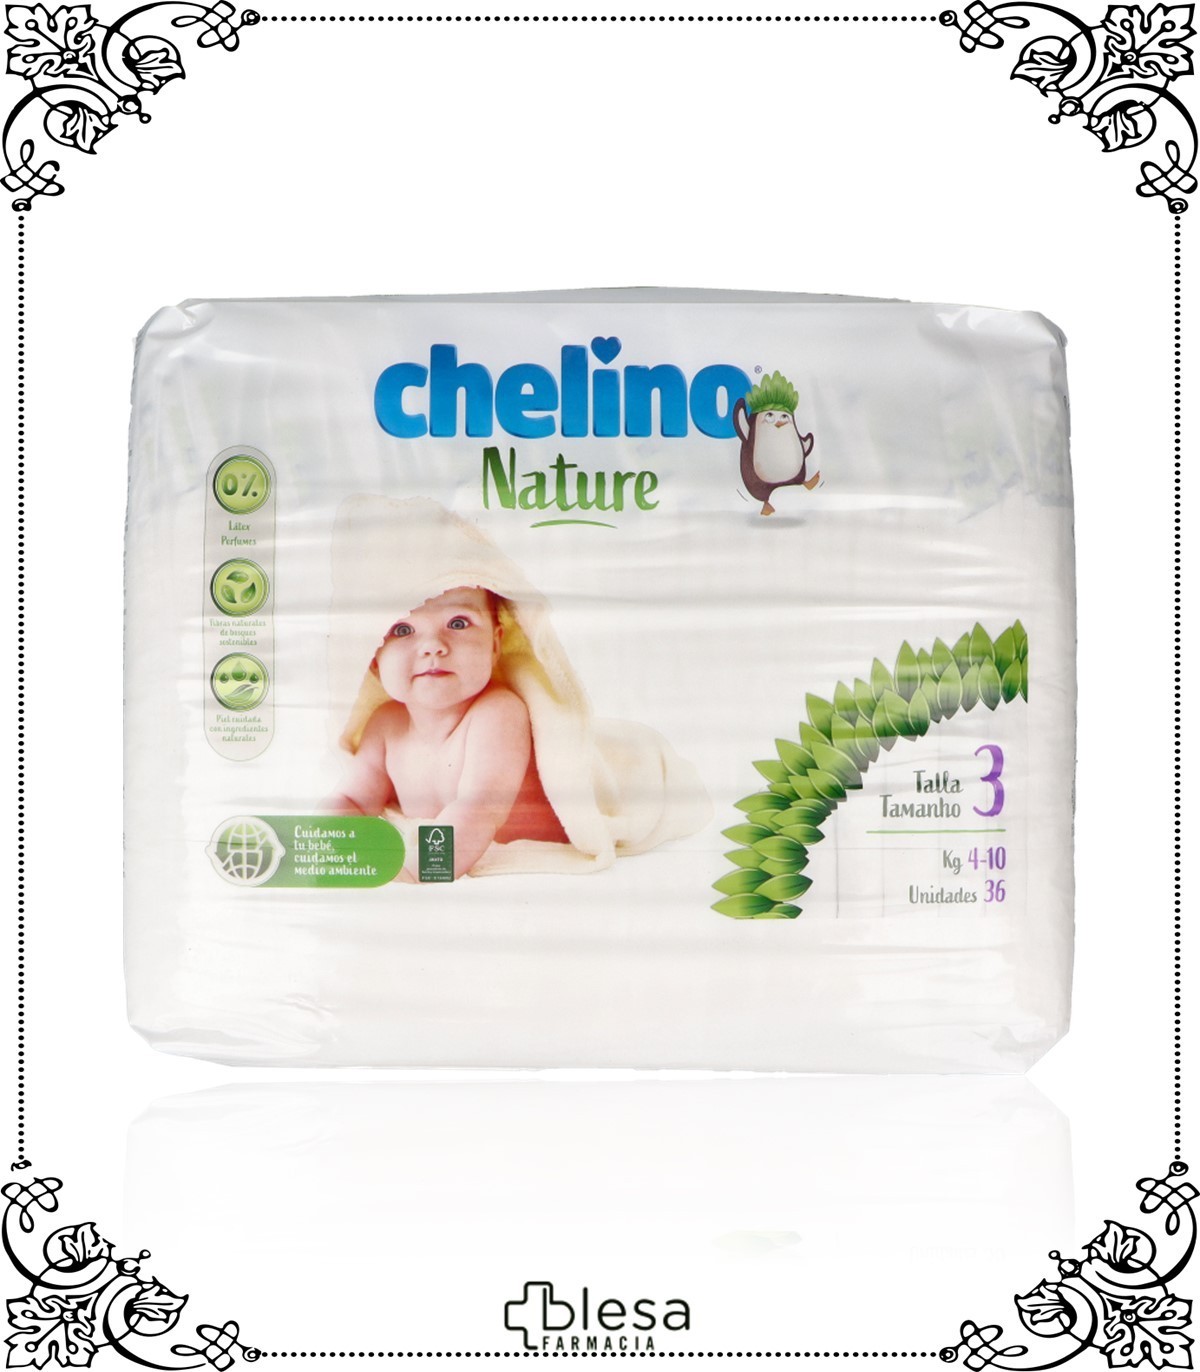 Pañal chelino love t-2 (3-6 kg)